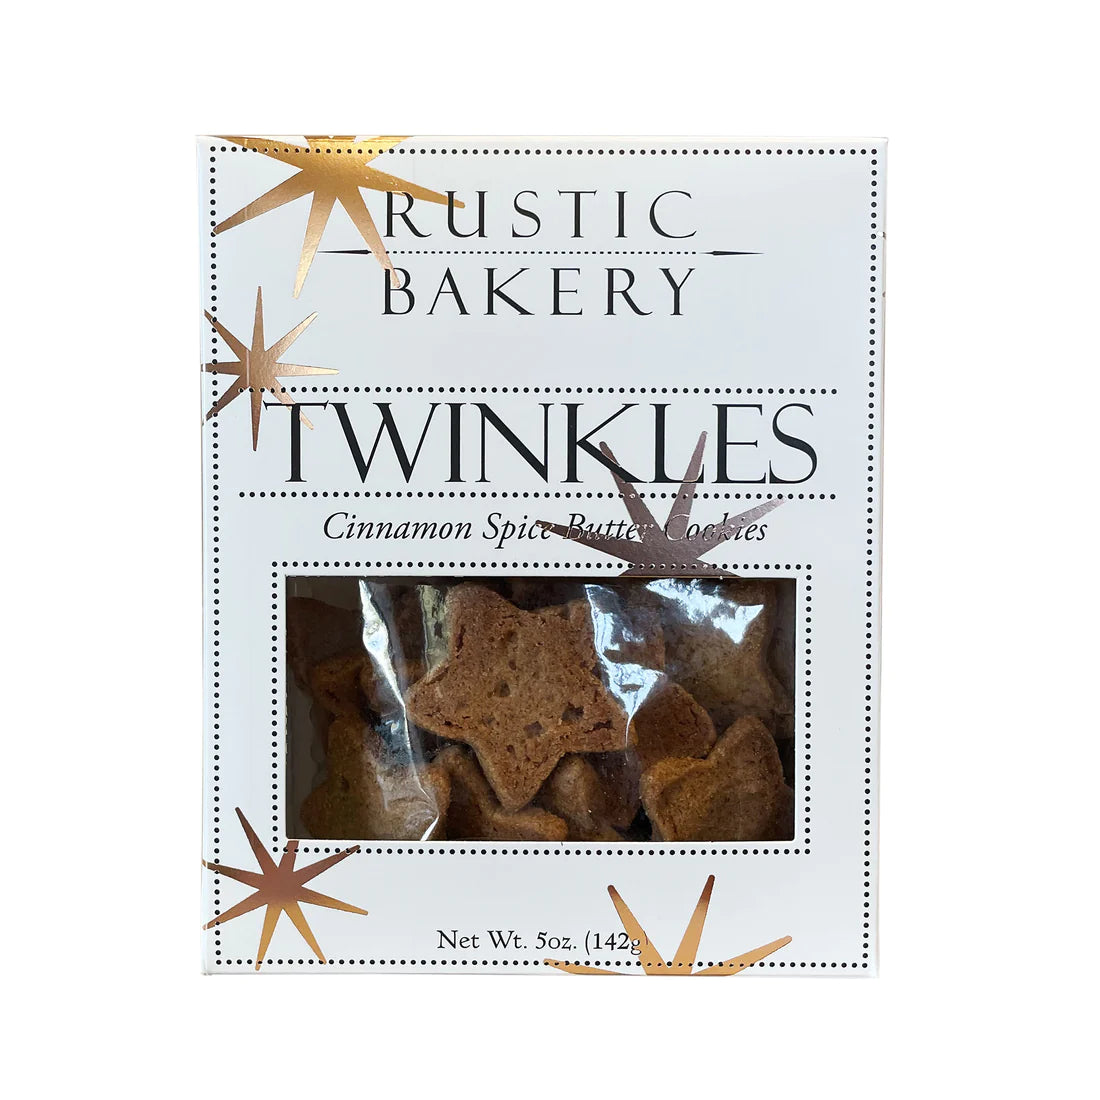 Rustic Bakery - Twinkles